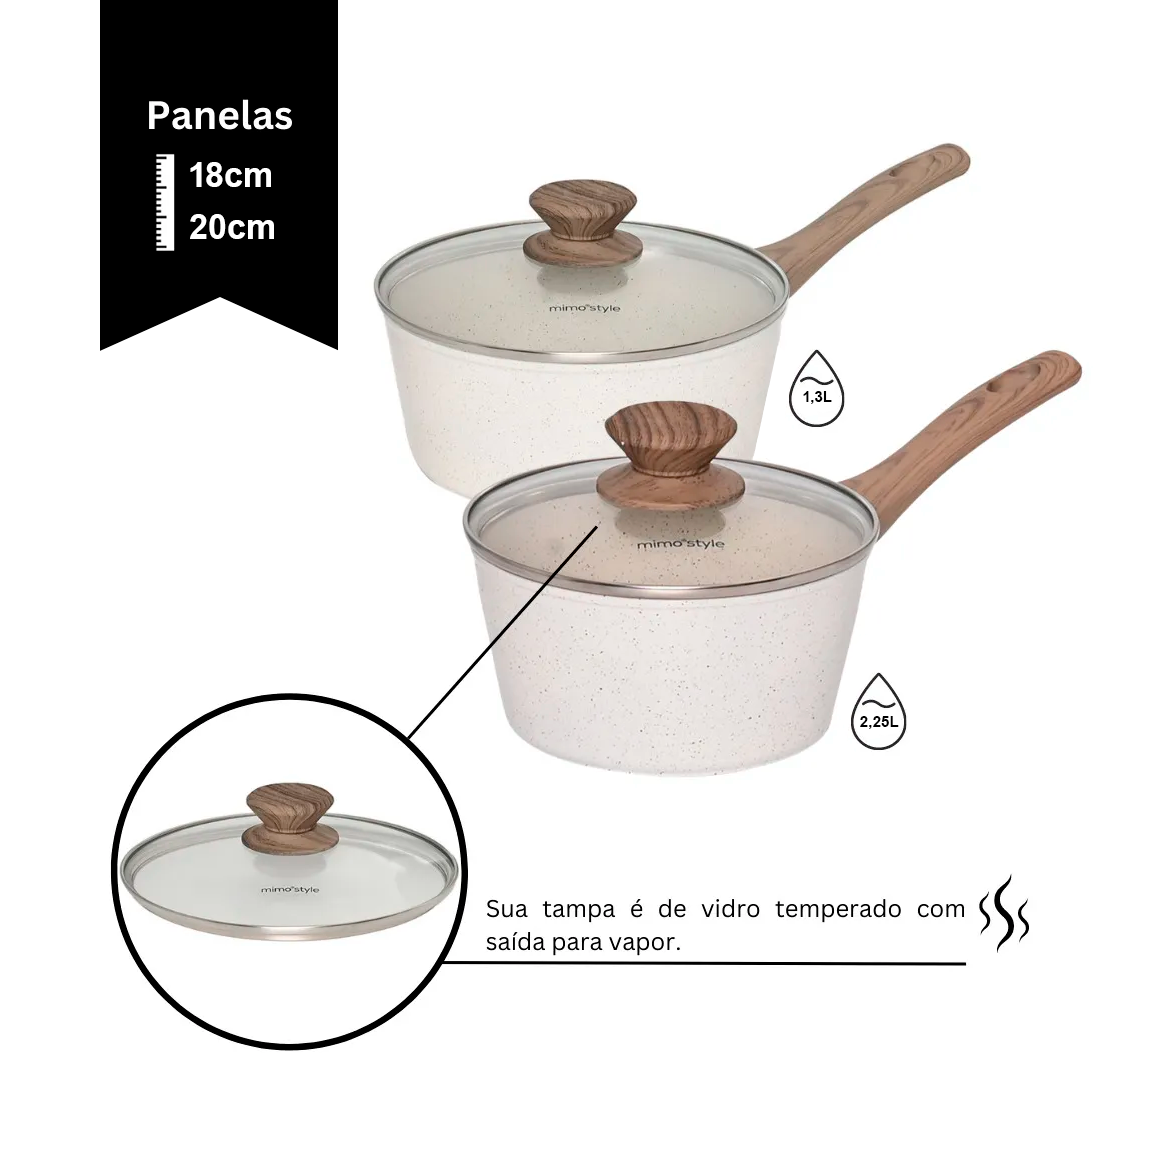 Jogo de Panela Ceramica Antiaderente Indução Mimo Style Cook Marmol 10 Peças Panelas e Utensílios - 7